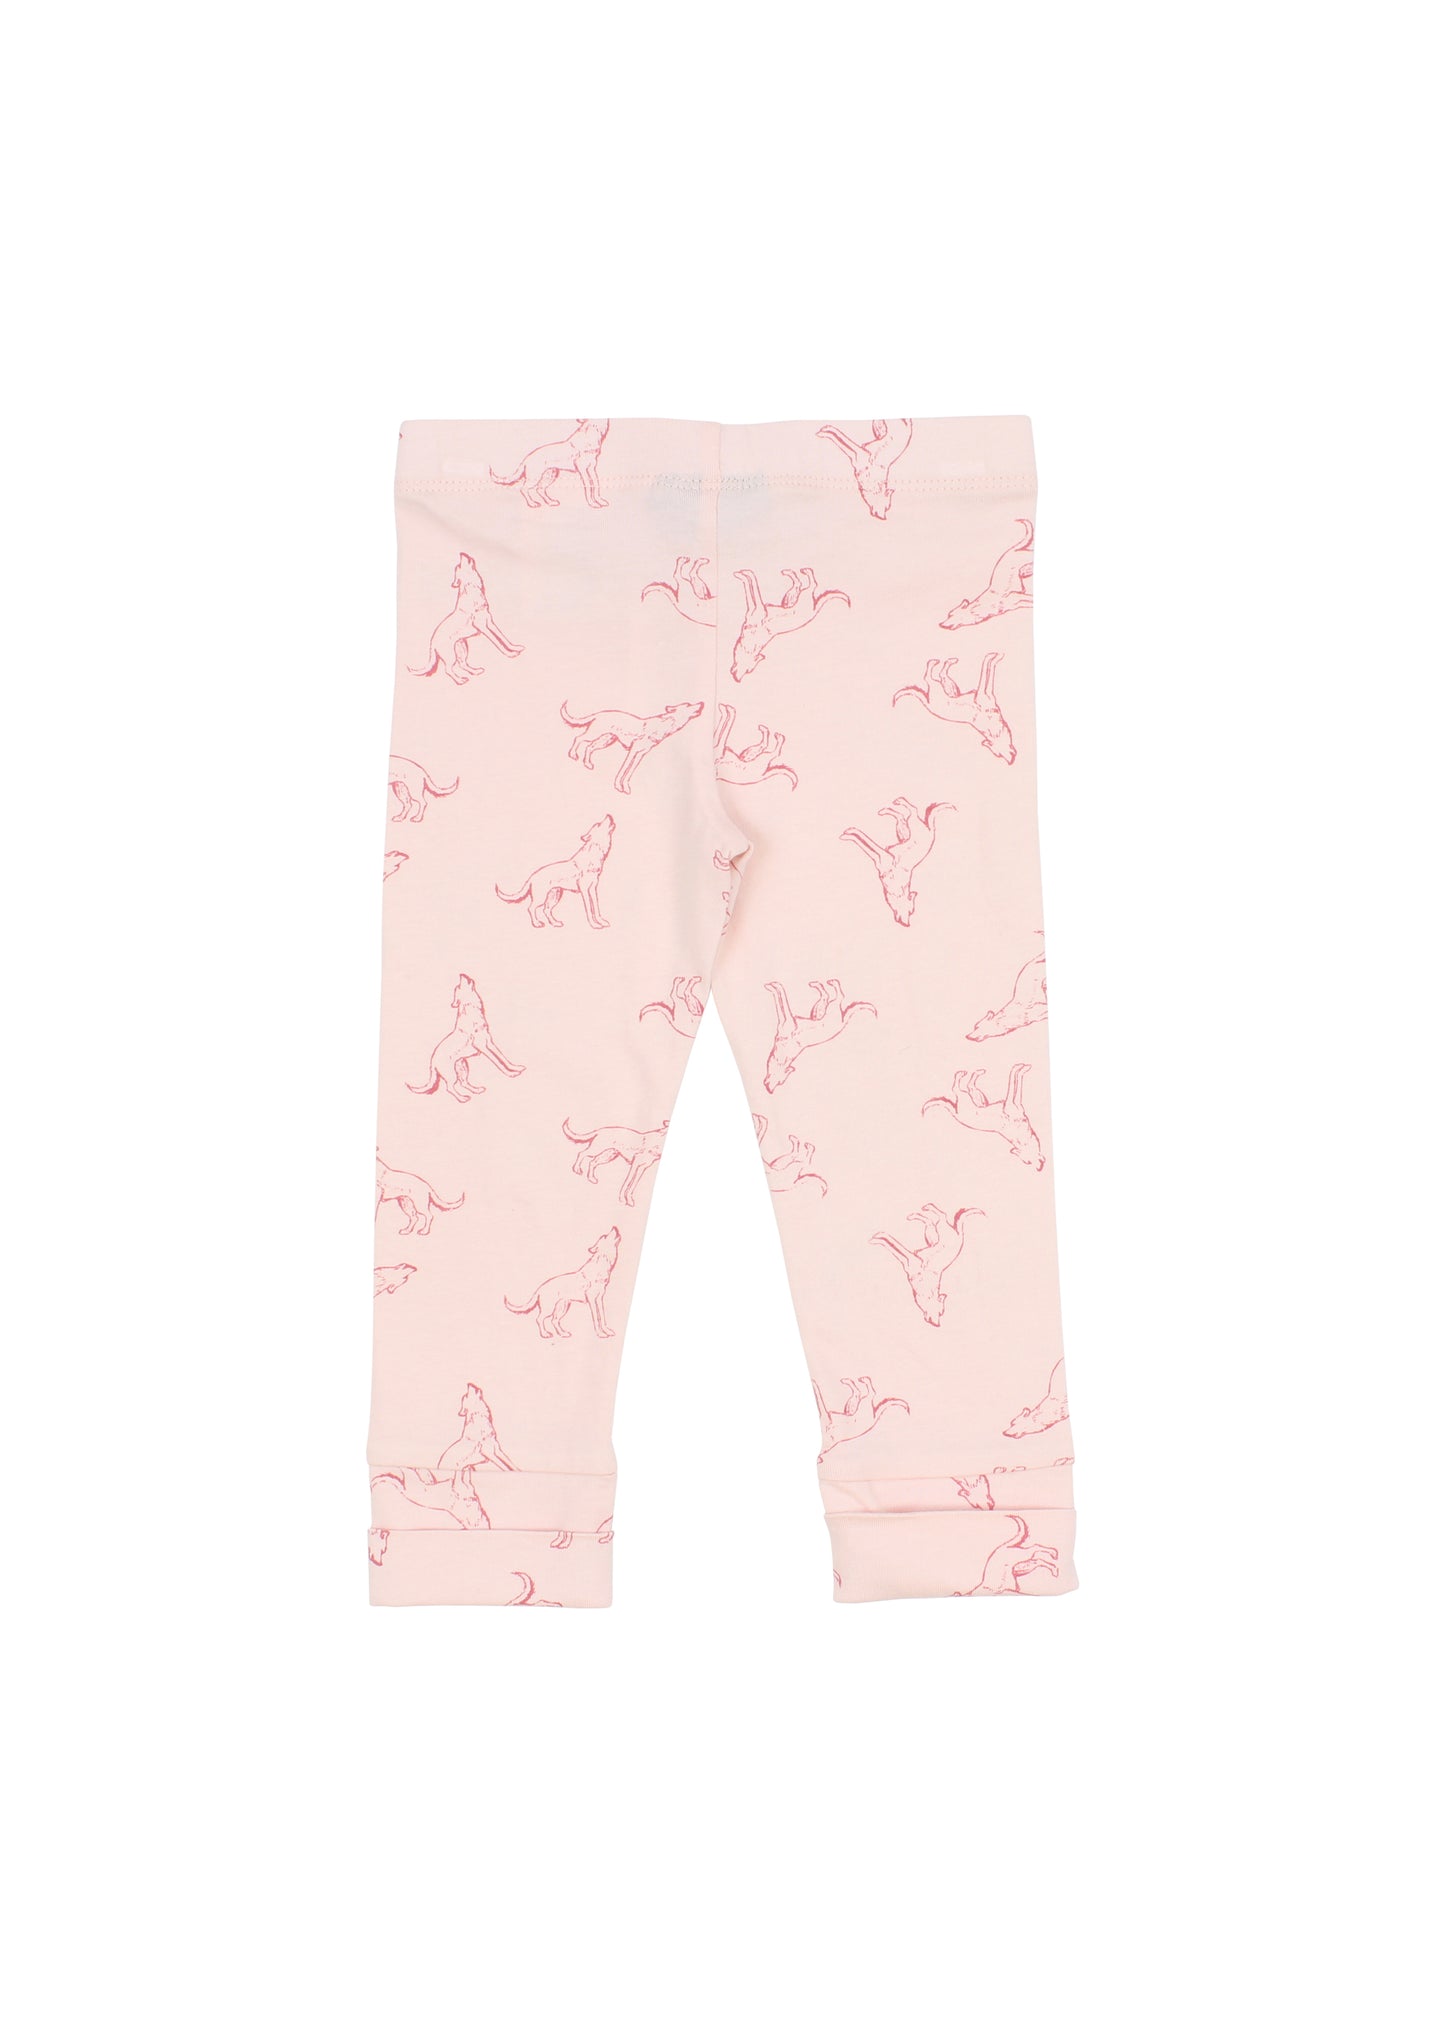 Pink leggings Romy&Aksel for baby girl